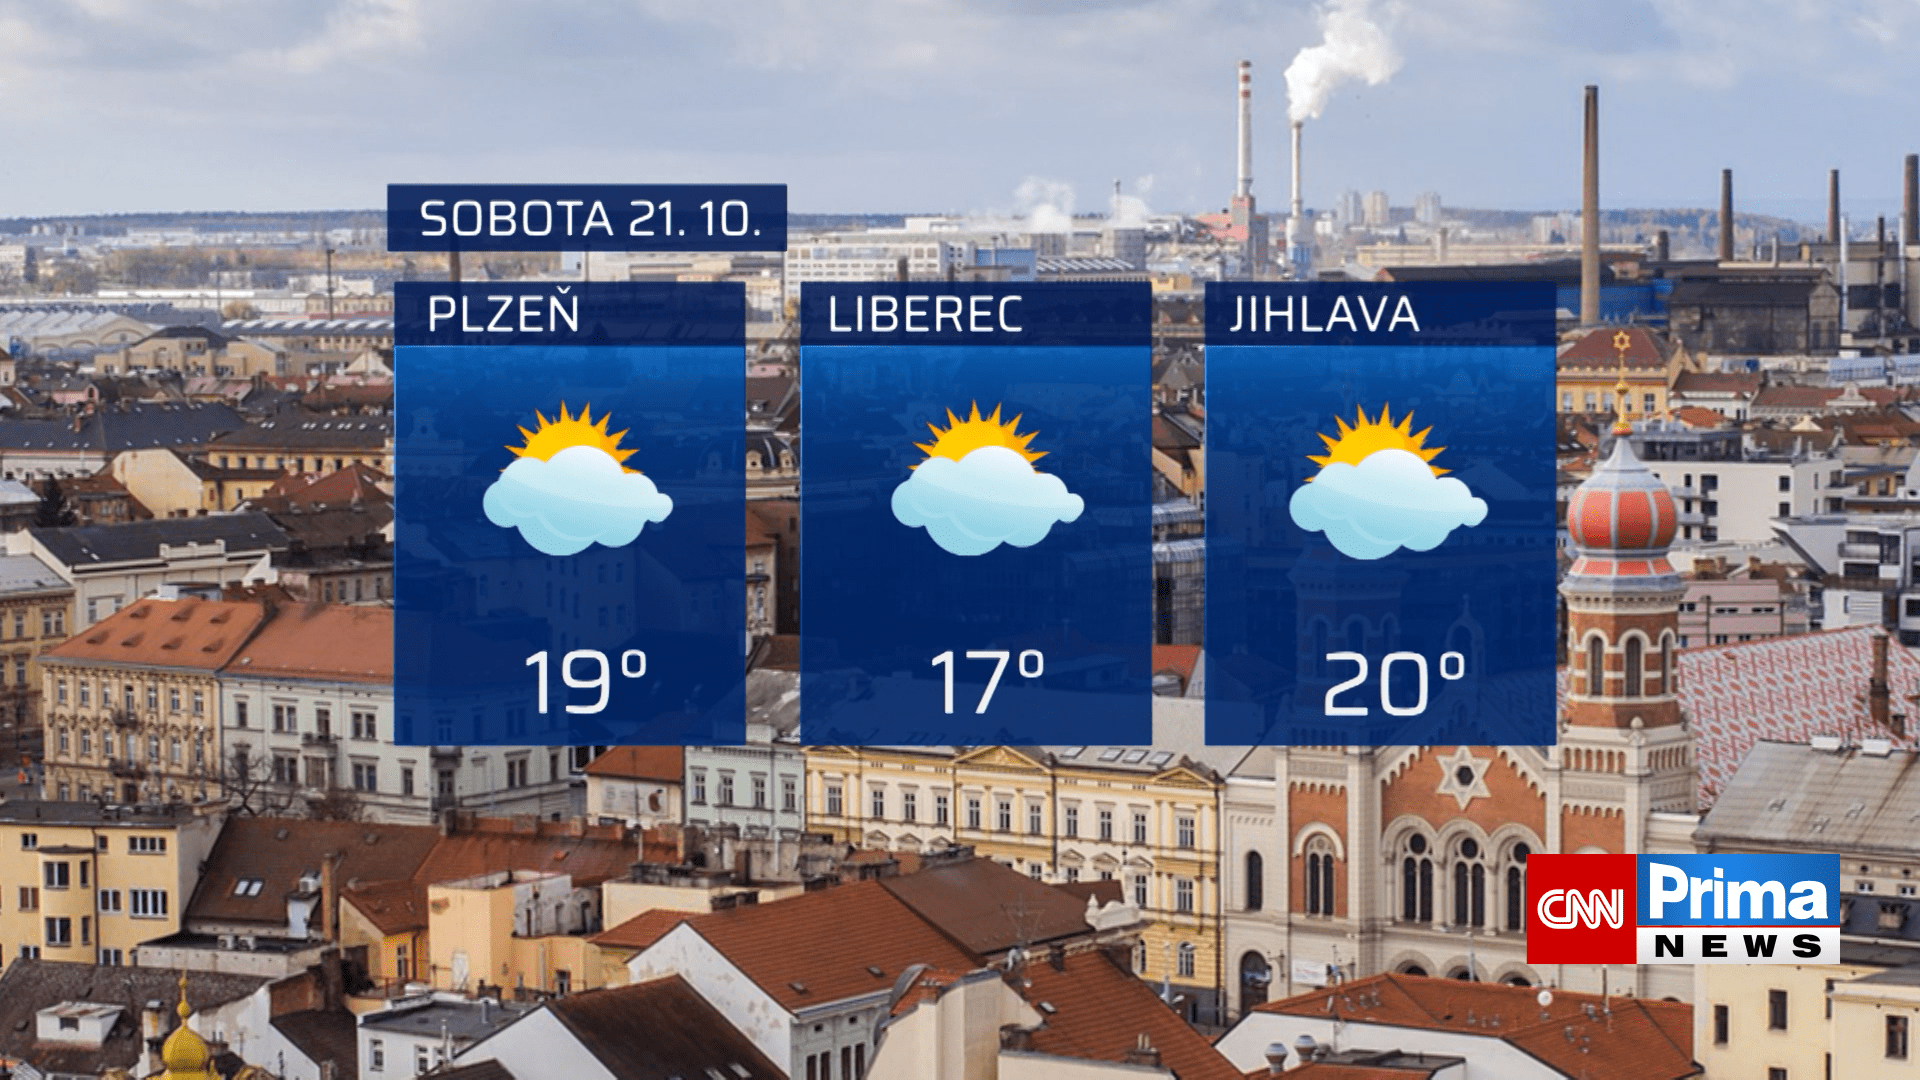 Předpověď počasí na 21. října (Plzeň, Liberec, Jihlava)